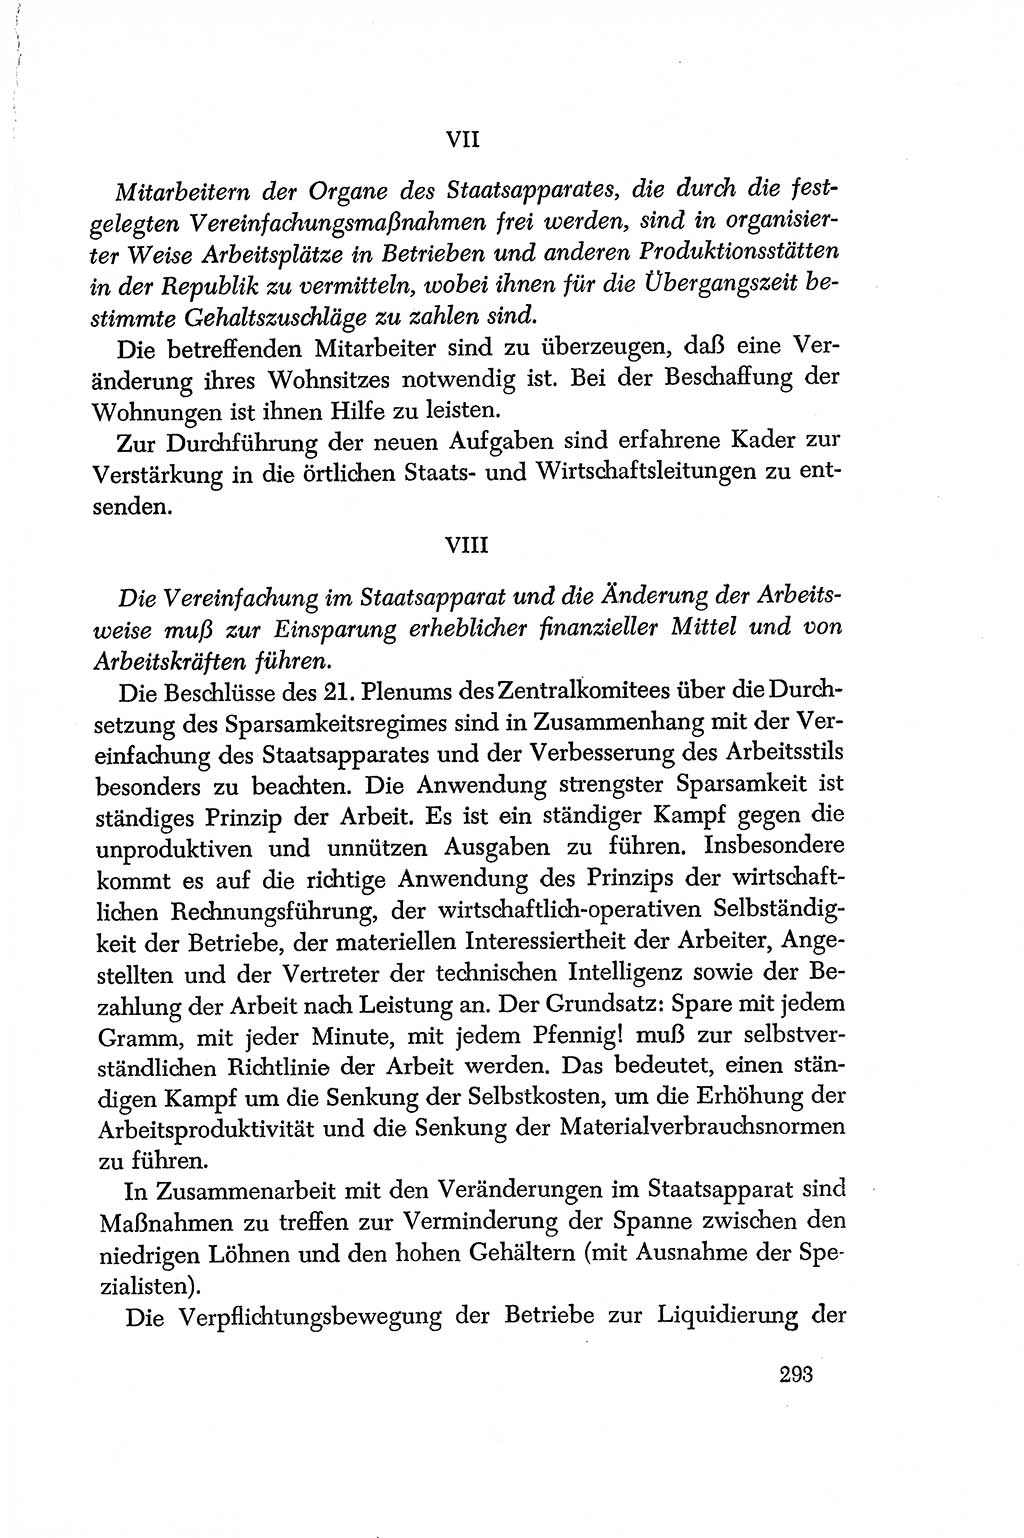 Dokumente der Sozialistischen Einheitspartei Deutschlands (SED) [Deutsche Demokratische Republik (DDR)] 1956-1957, Seite 293 (Dok. SED DDR 1956-1957, S. 293)